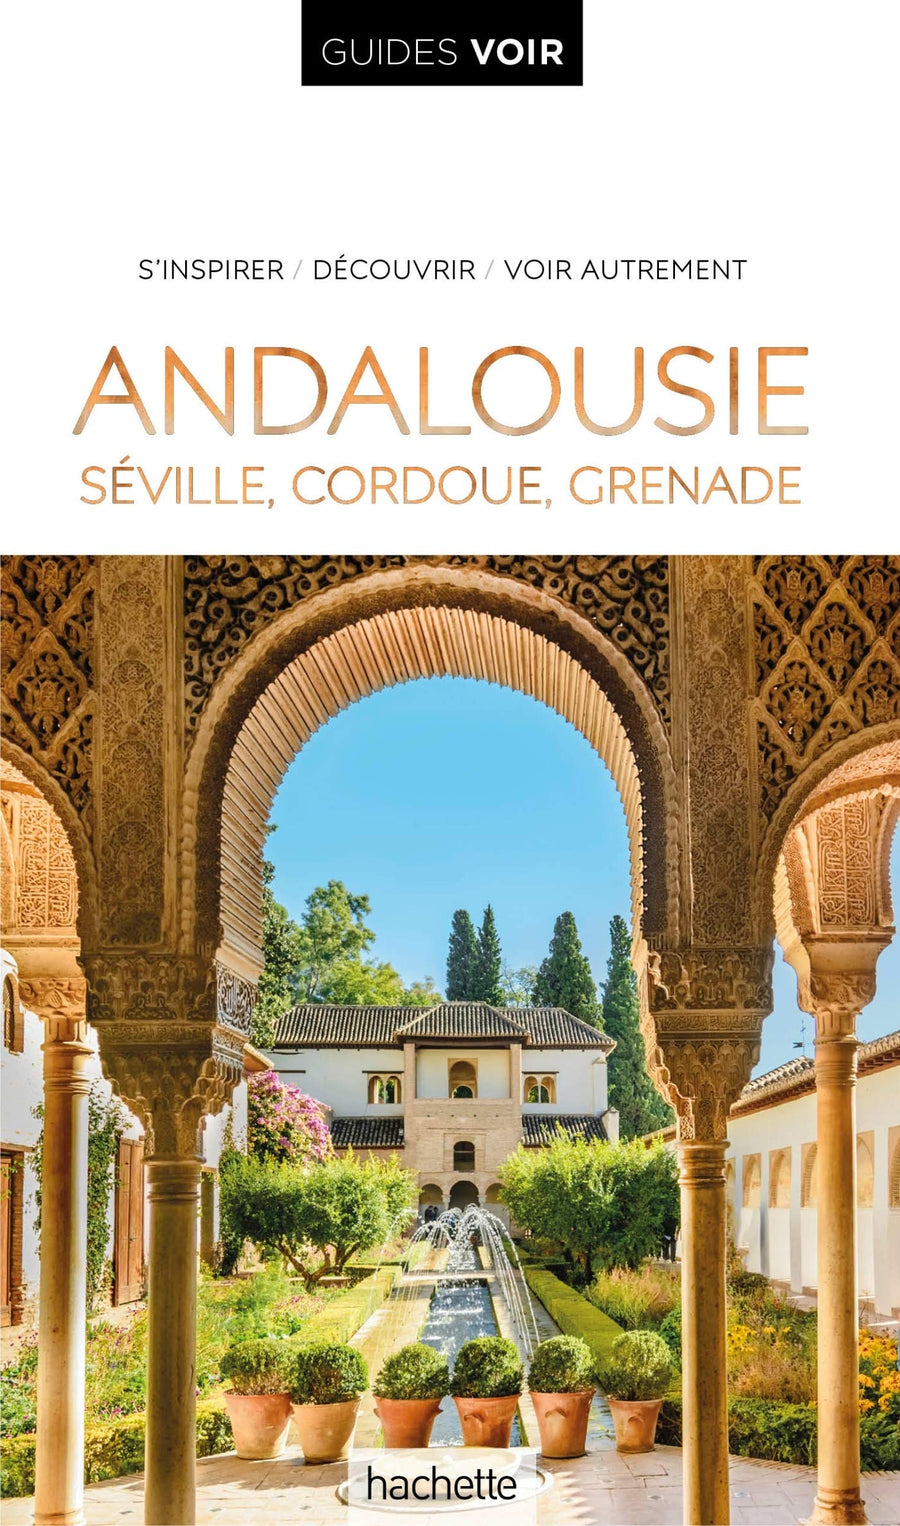 Guide de voyage - Andalousie (Séville, Cordoue, Grenade) - Édition 2021 | Guides Voir guide de voyage Guides Voir 